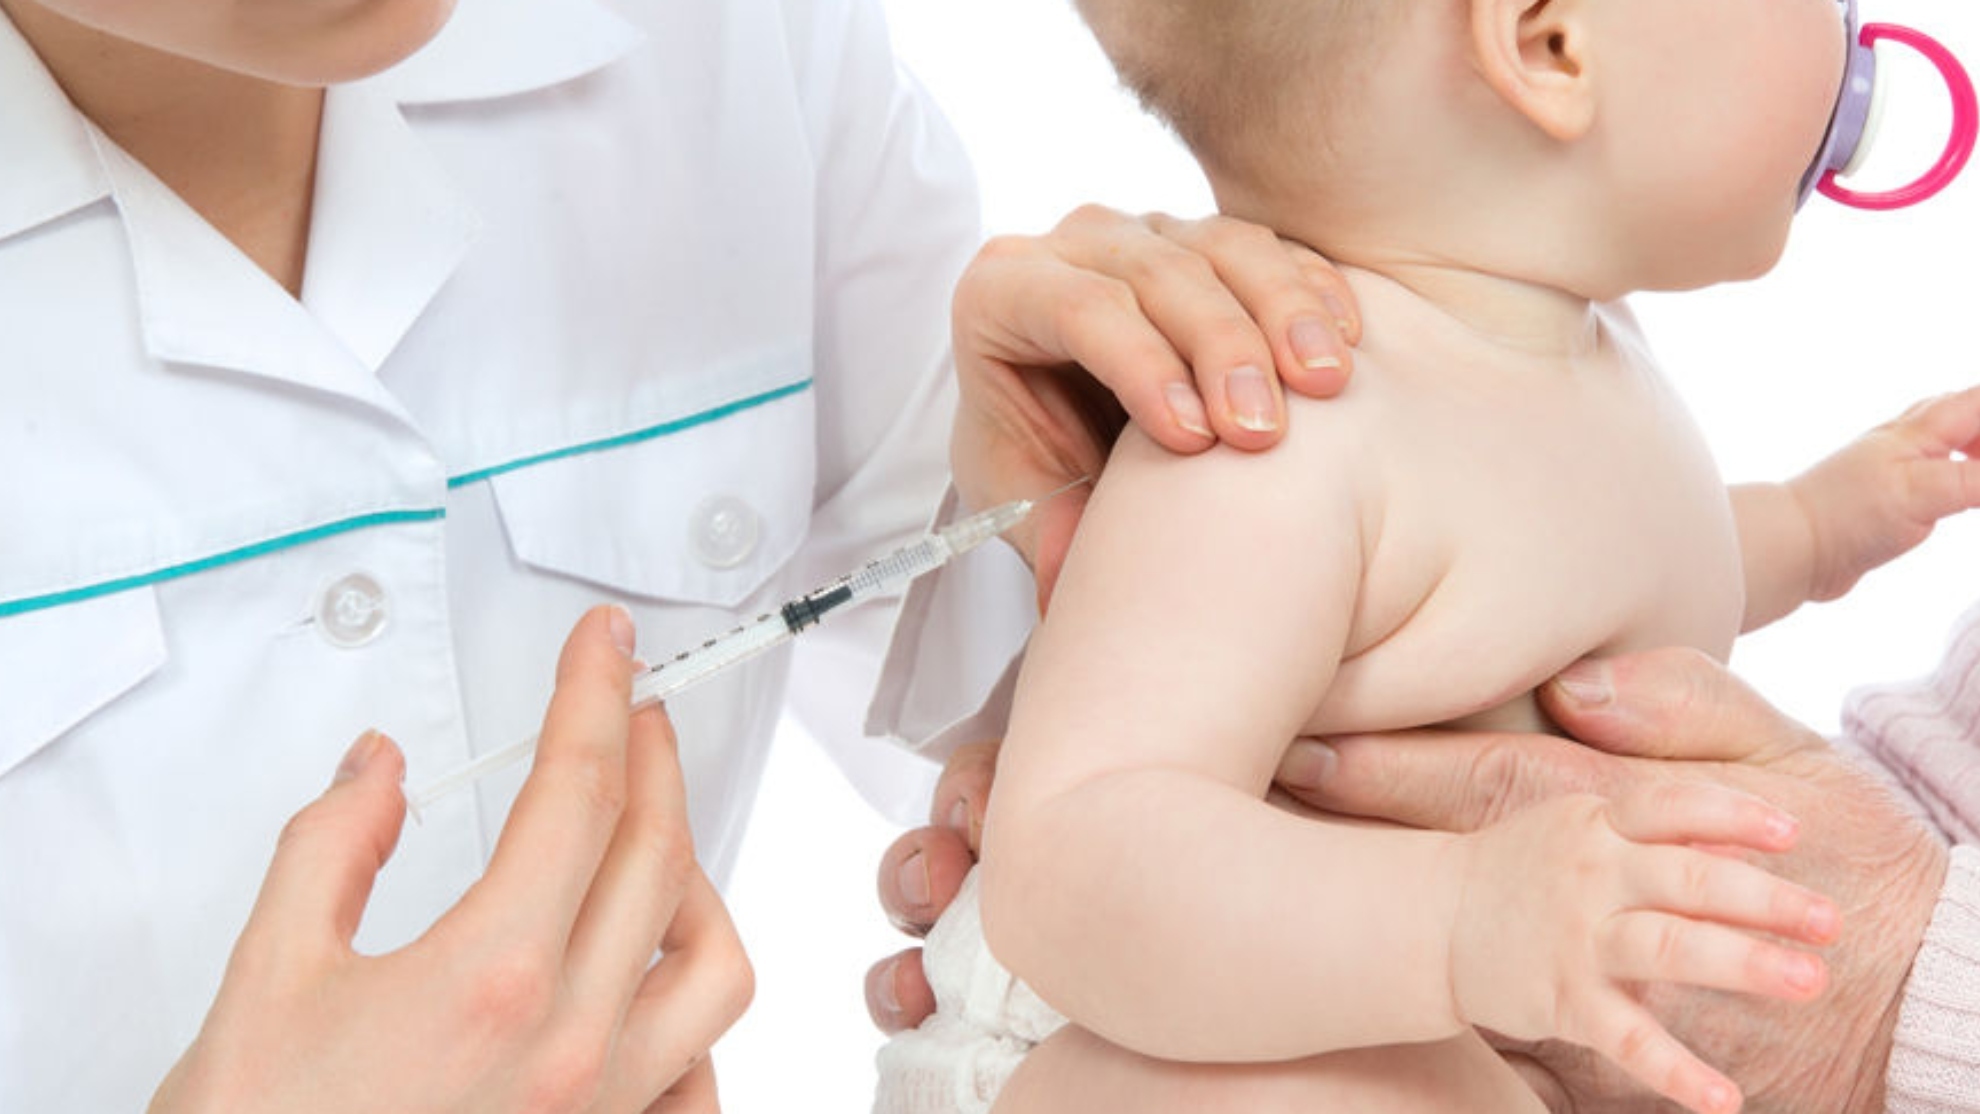 La vacuna de Moderna, en dos dosis, está autorizada con carácter de urgencia para niños de entre seis meses y cinco años. La de Pfizer, esta vez en tres dosis, lo será entre los seis meses y los 4 años